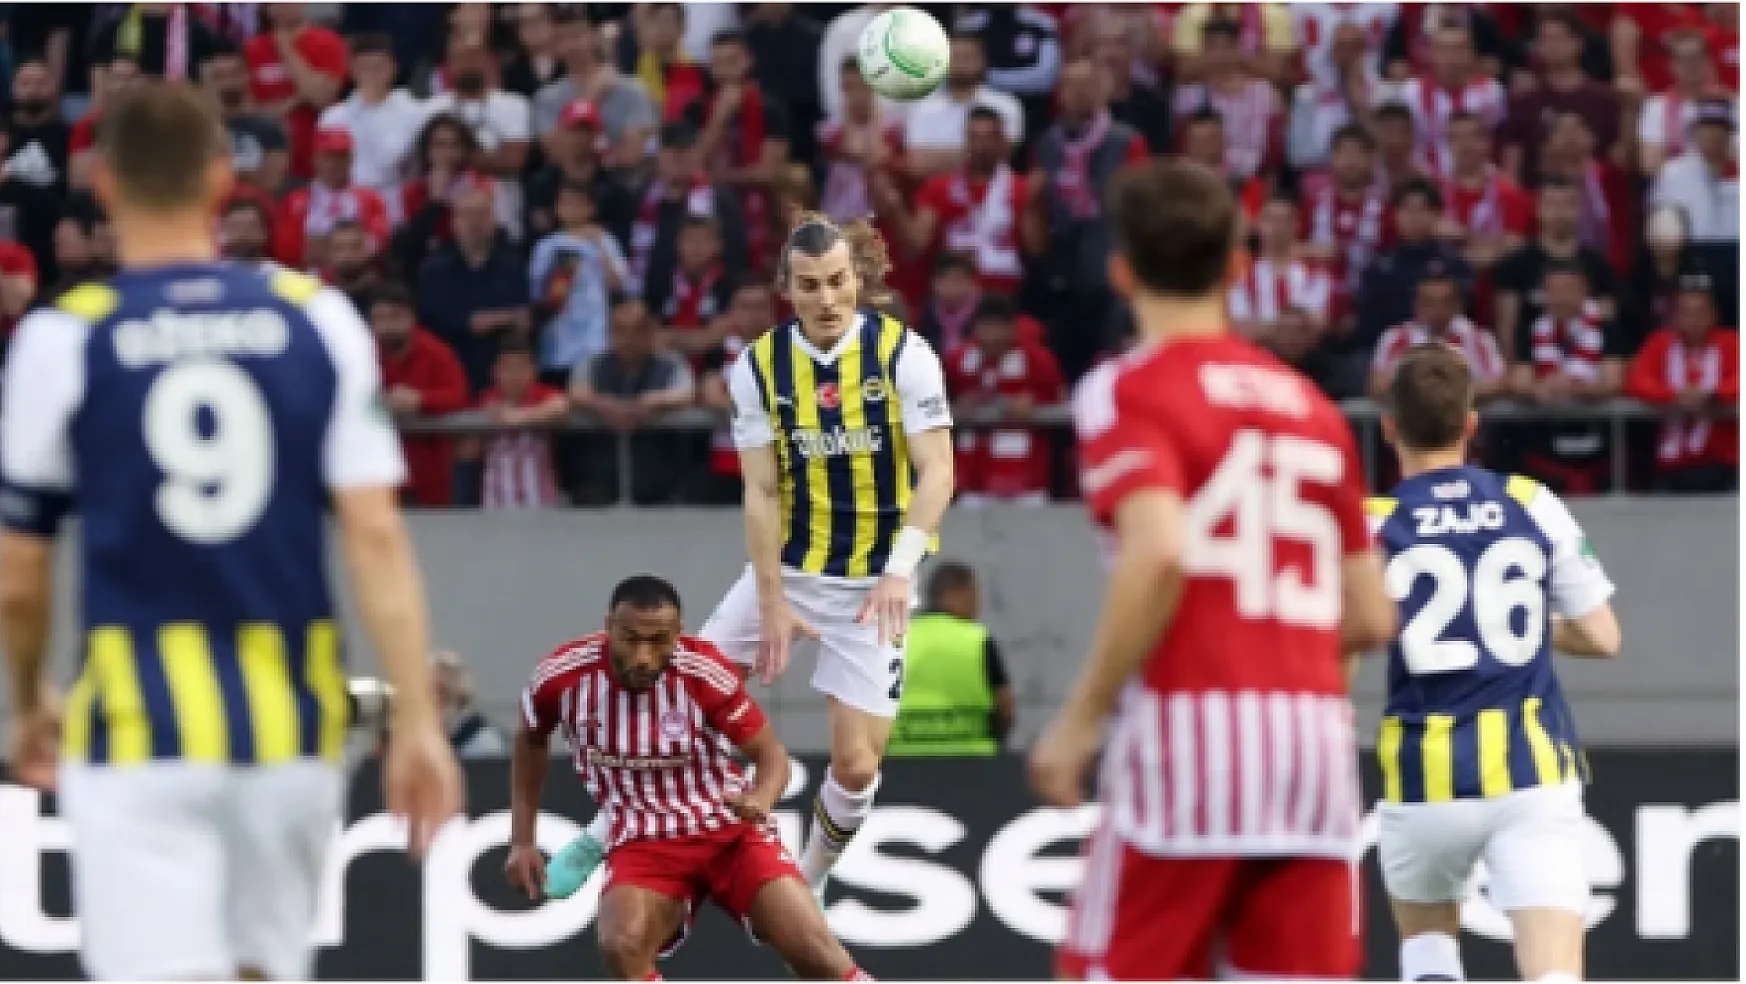 Tur İstanbul'a kaldı! Fenerbahçe, Olympiakos'a deplasmanda 3-2 yenildi